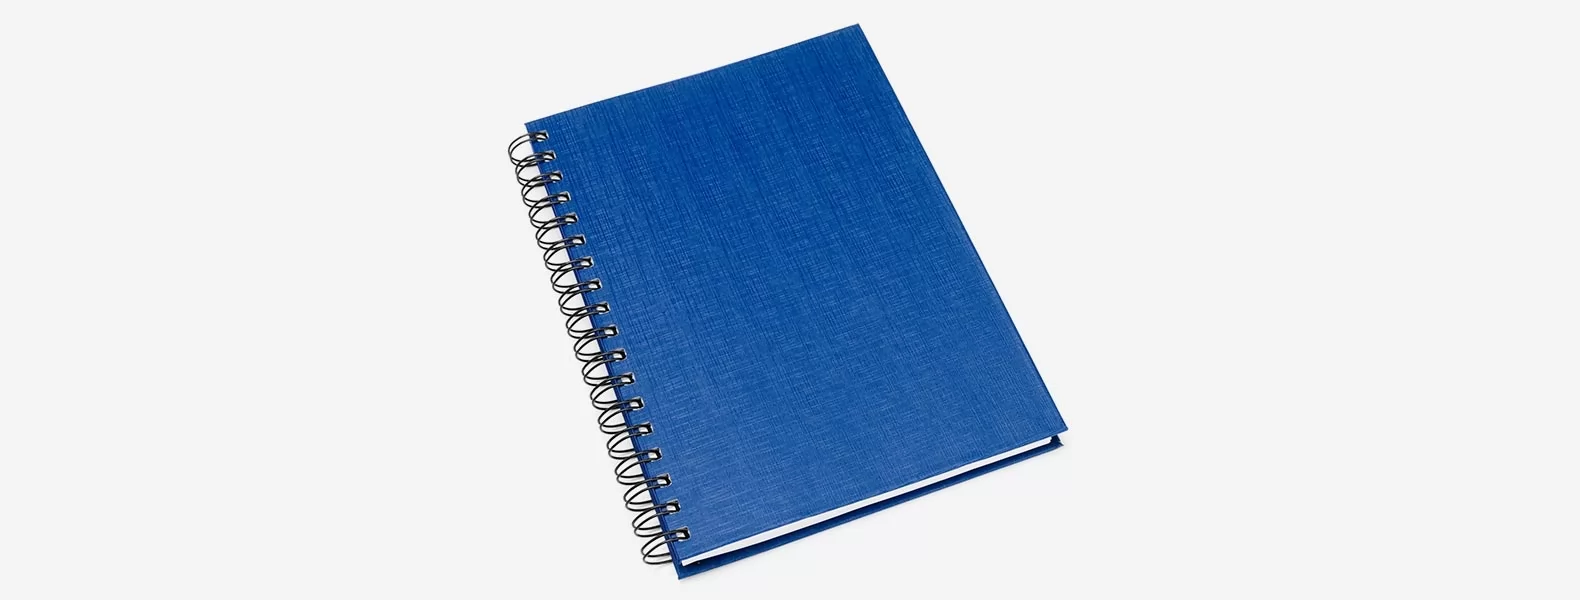 Caderno Pautado Com Wire-o - Azul - 235x18cm - 100 Fls